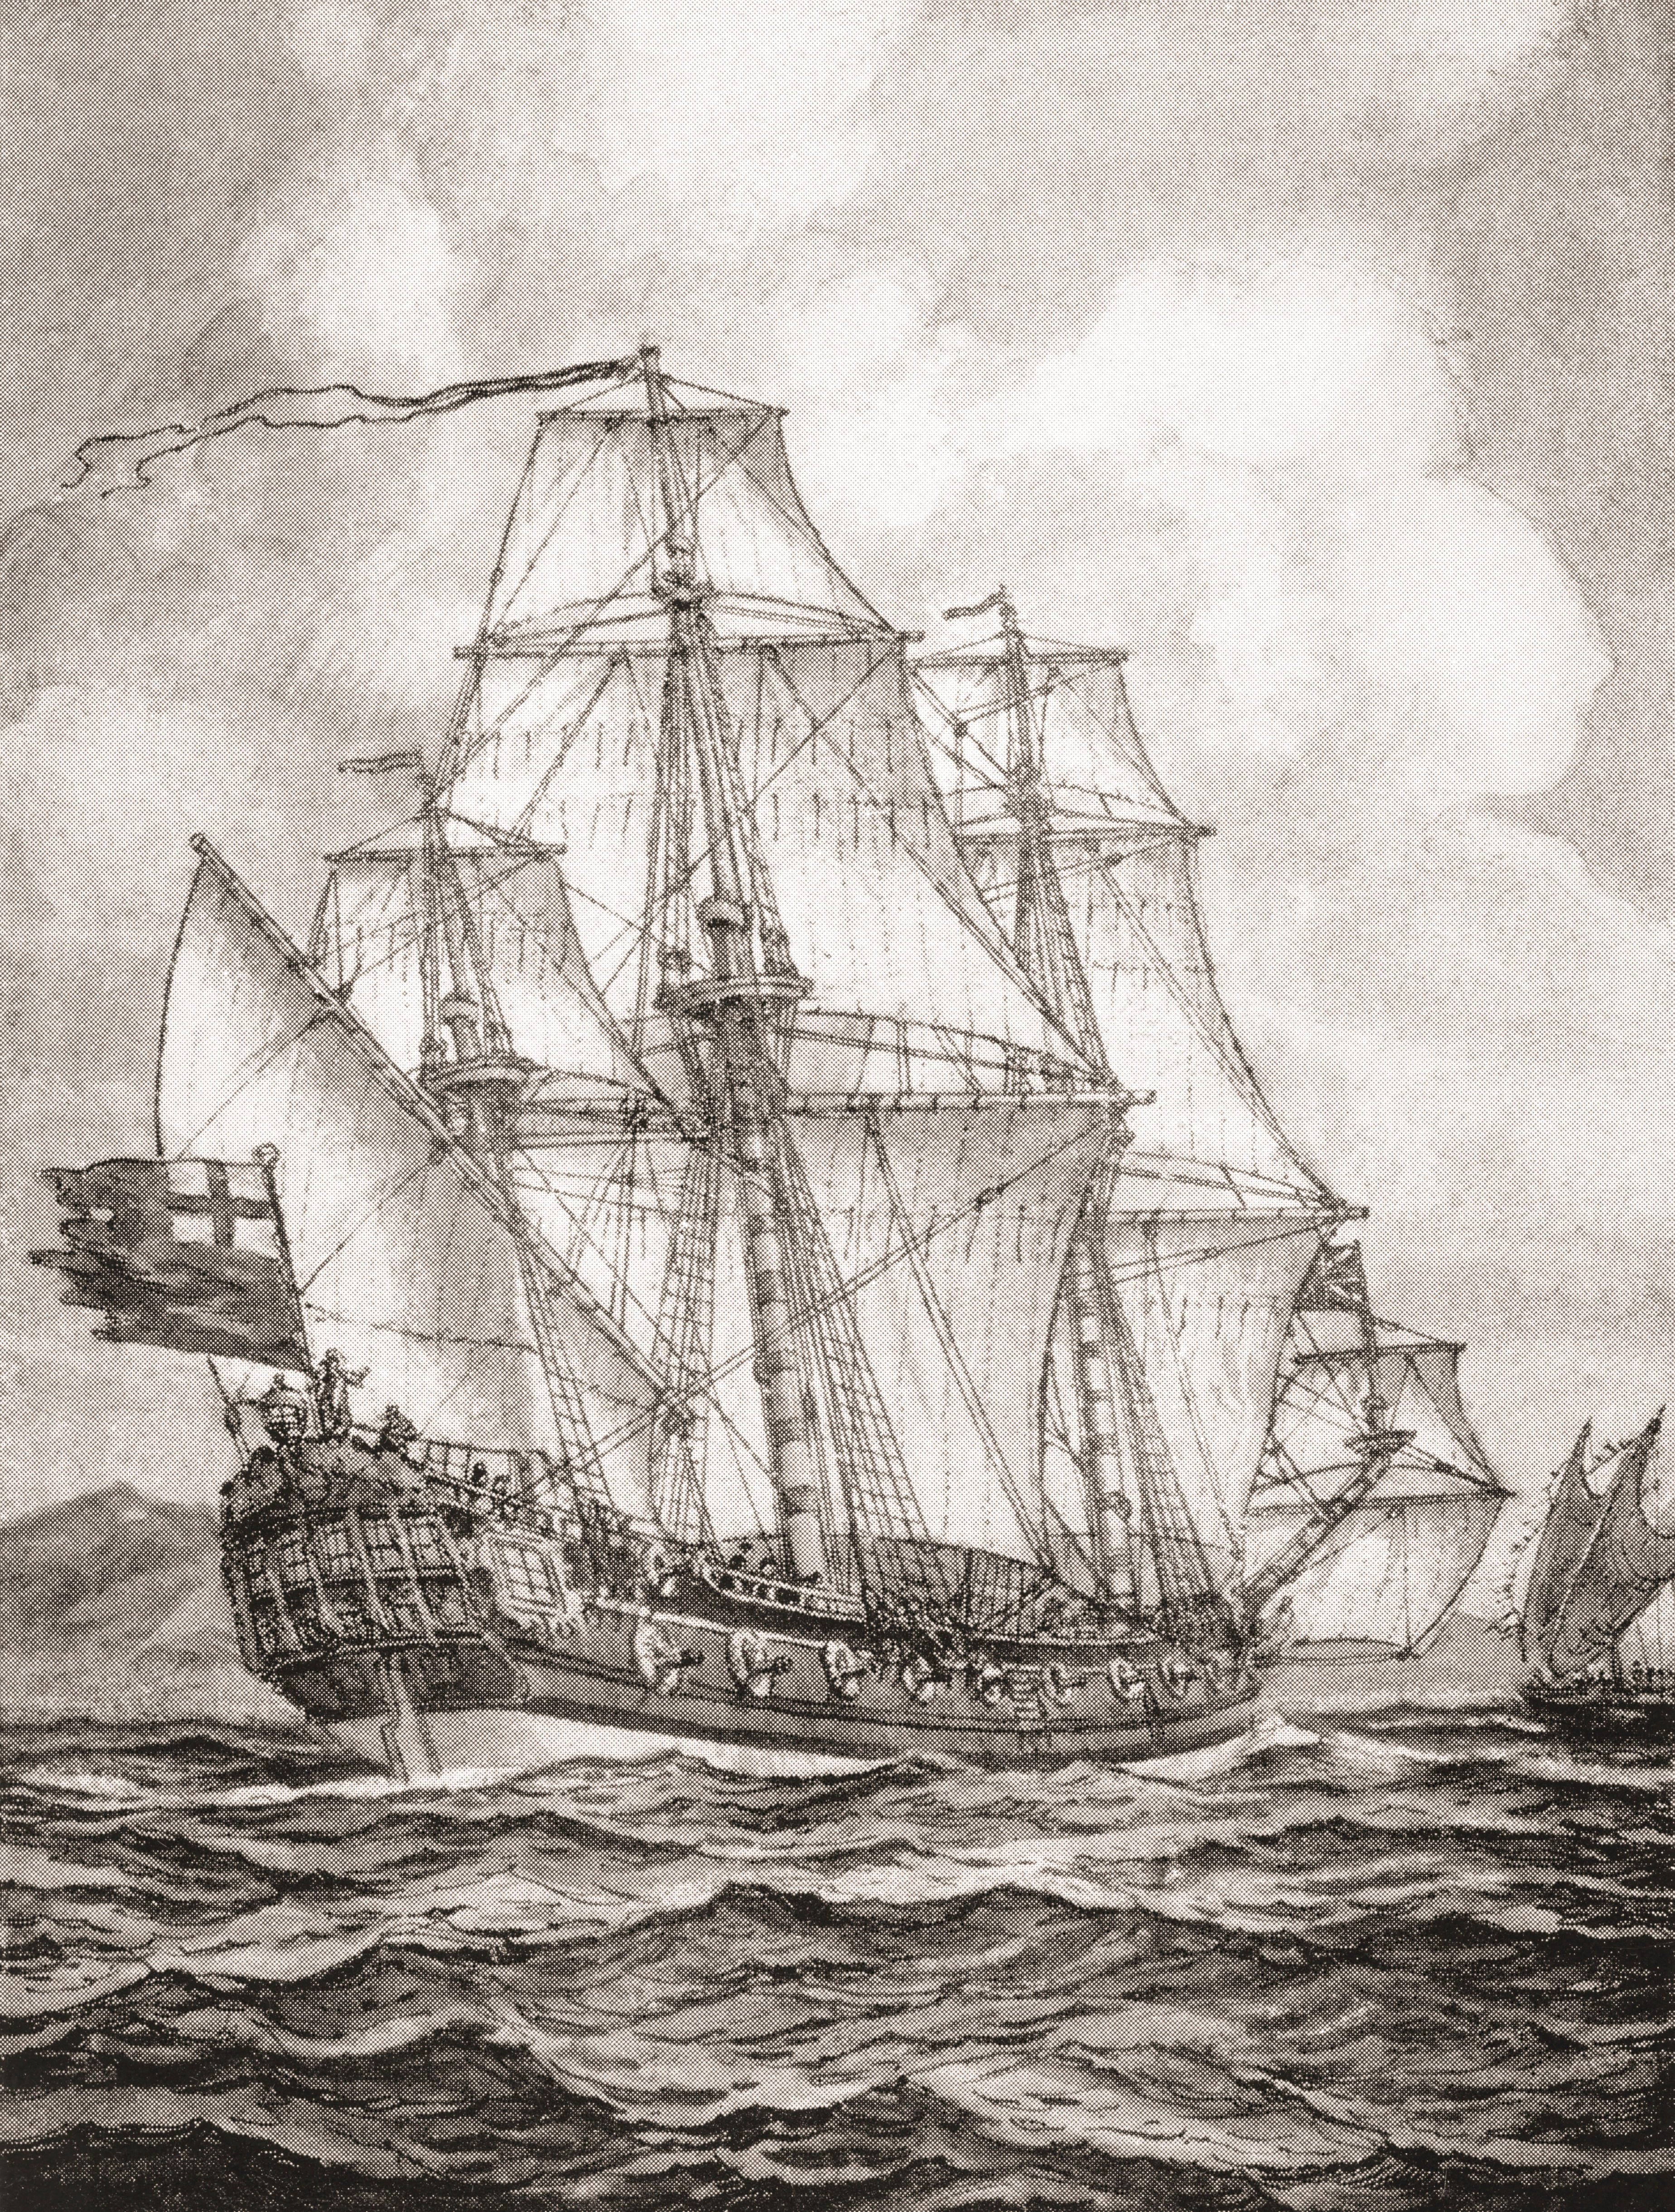 William Dampier aboard the <em>HMS Roebuck</em> surveys the New Guinea coast.